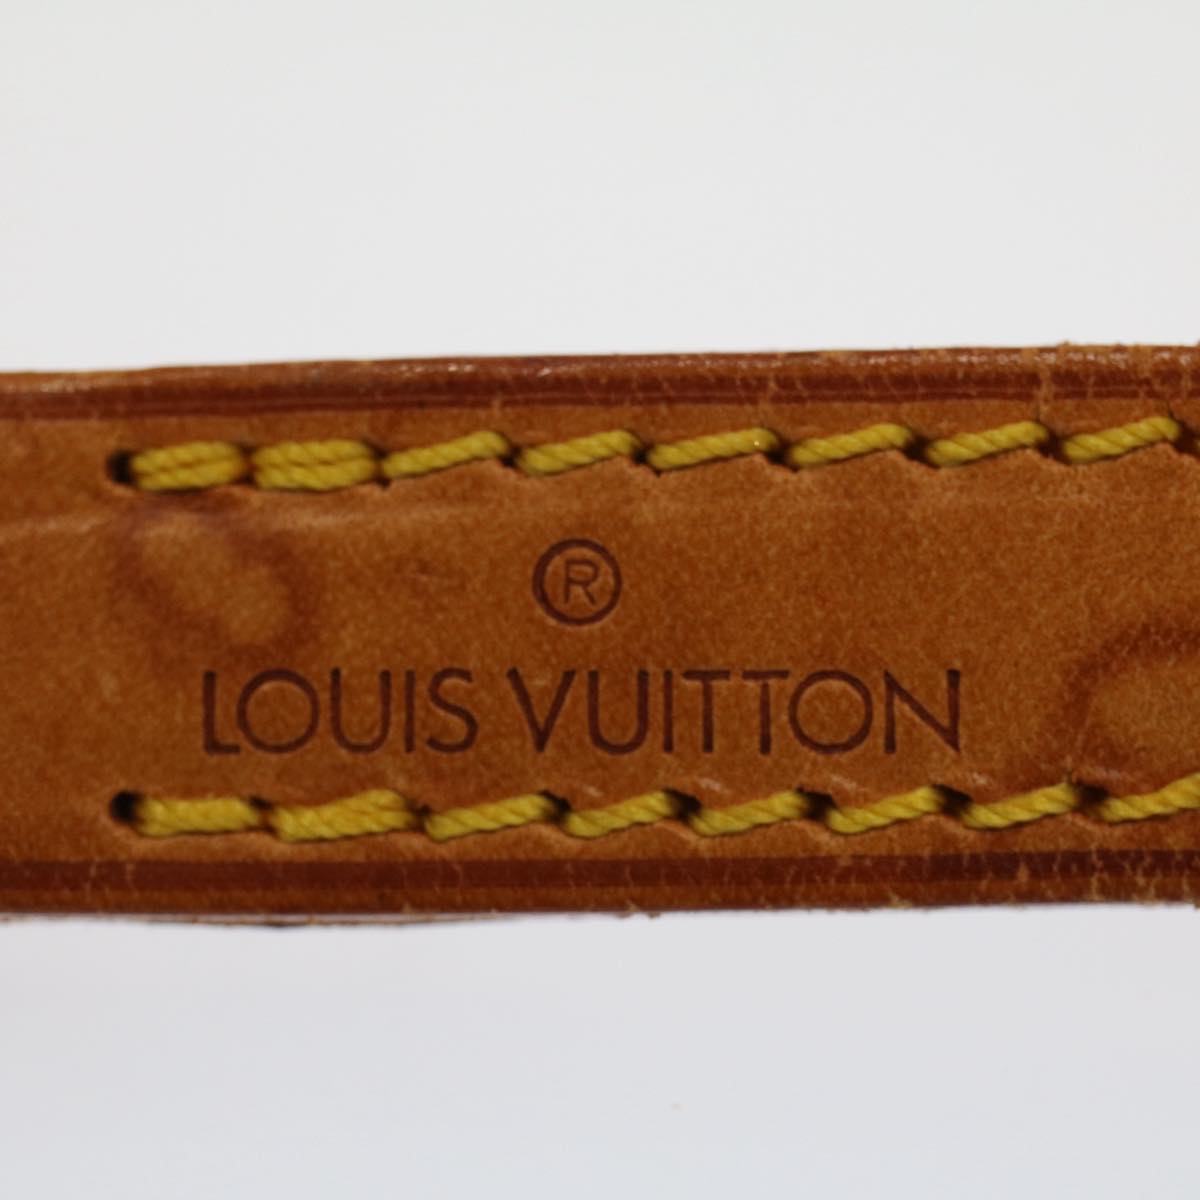 LOUIS VUITTON Shoulder Strap Leather 37"" Beige LV Auth 52286